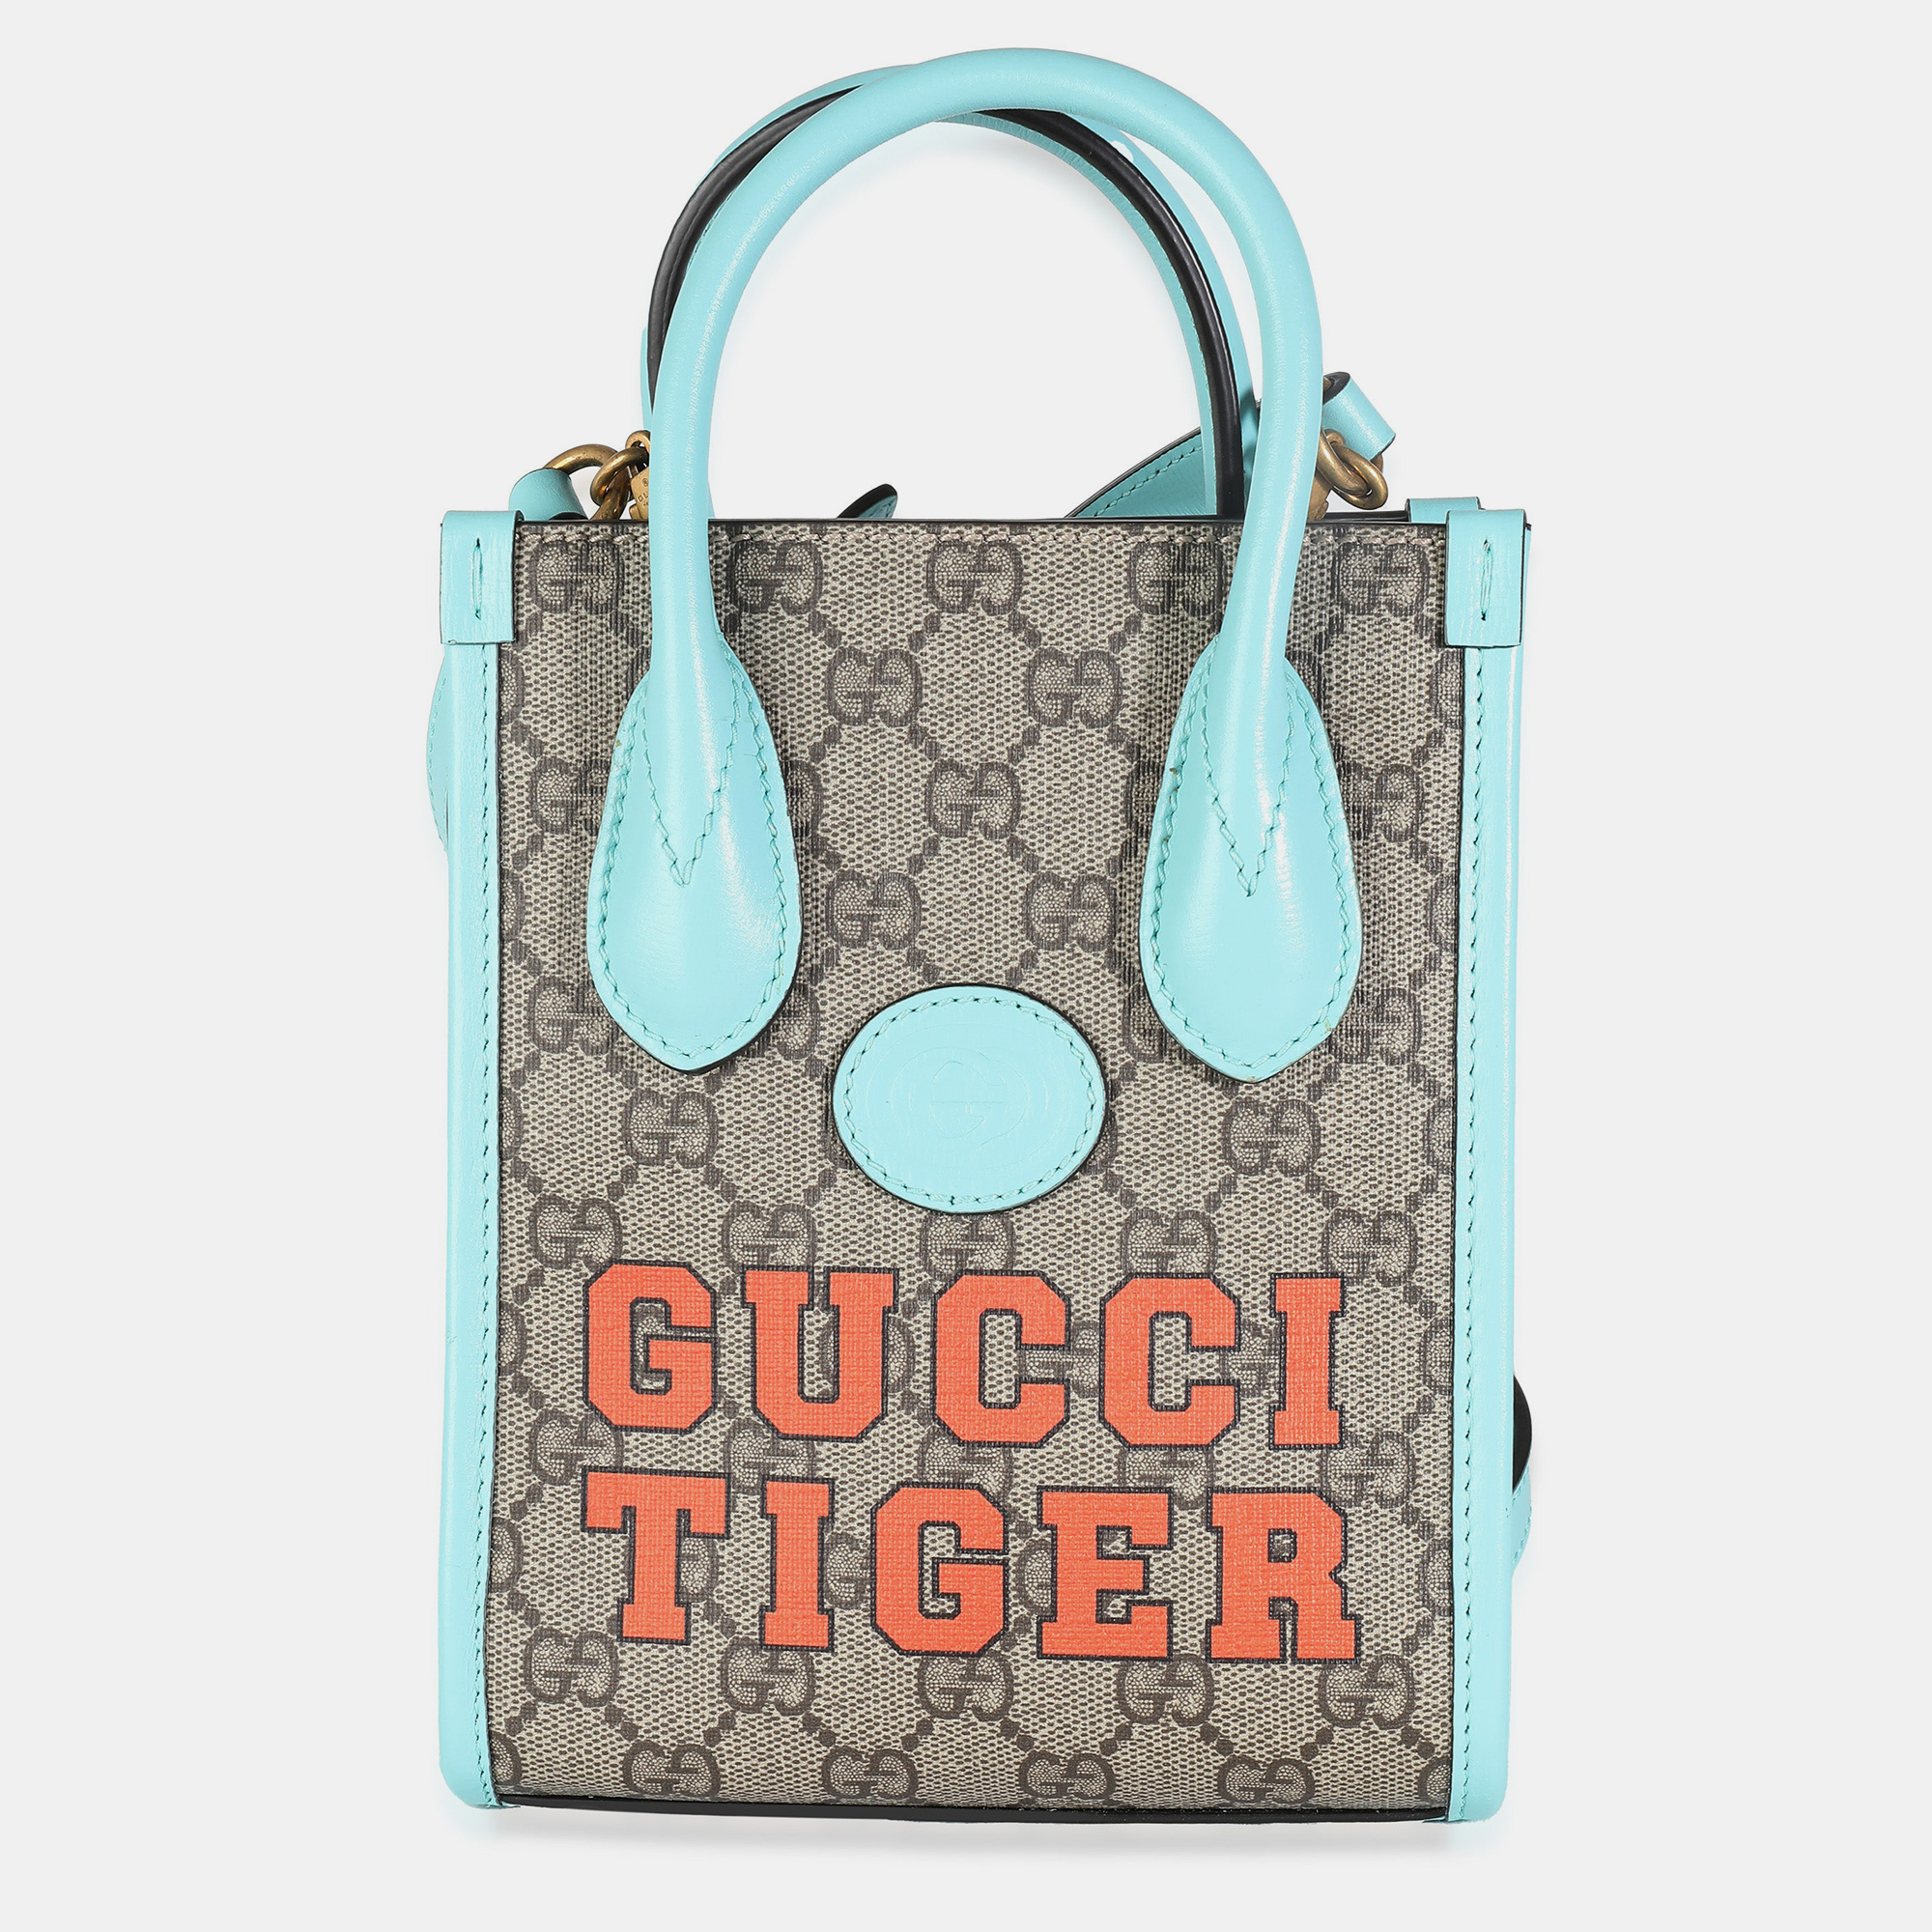 Gucci blue leather gg supreme canvas tiger mini tote bag